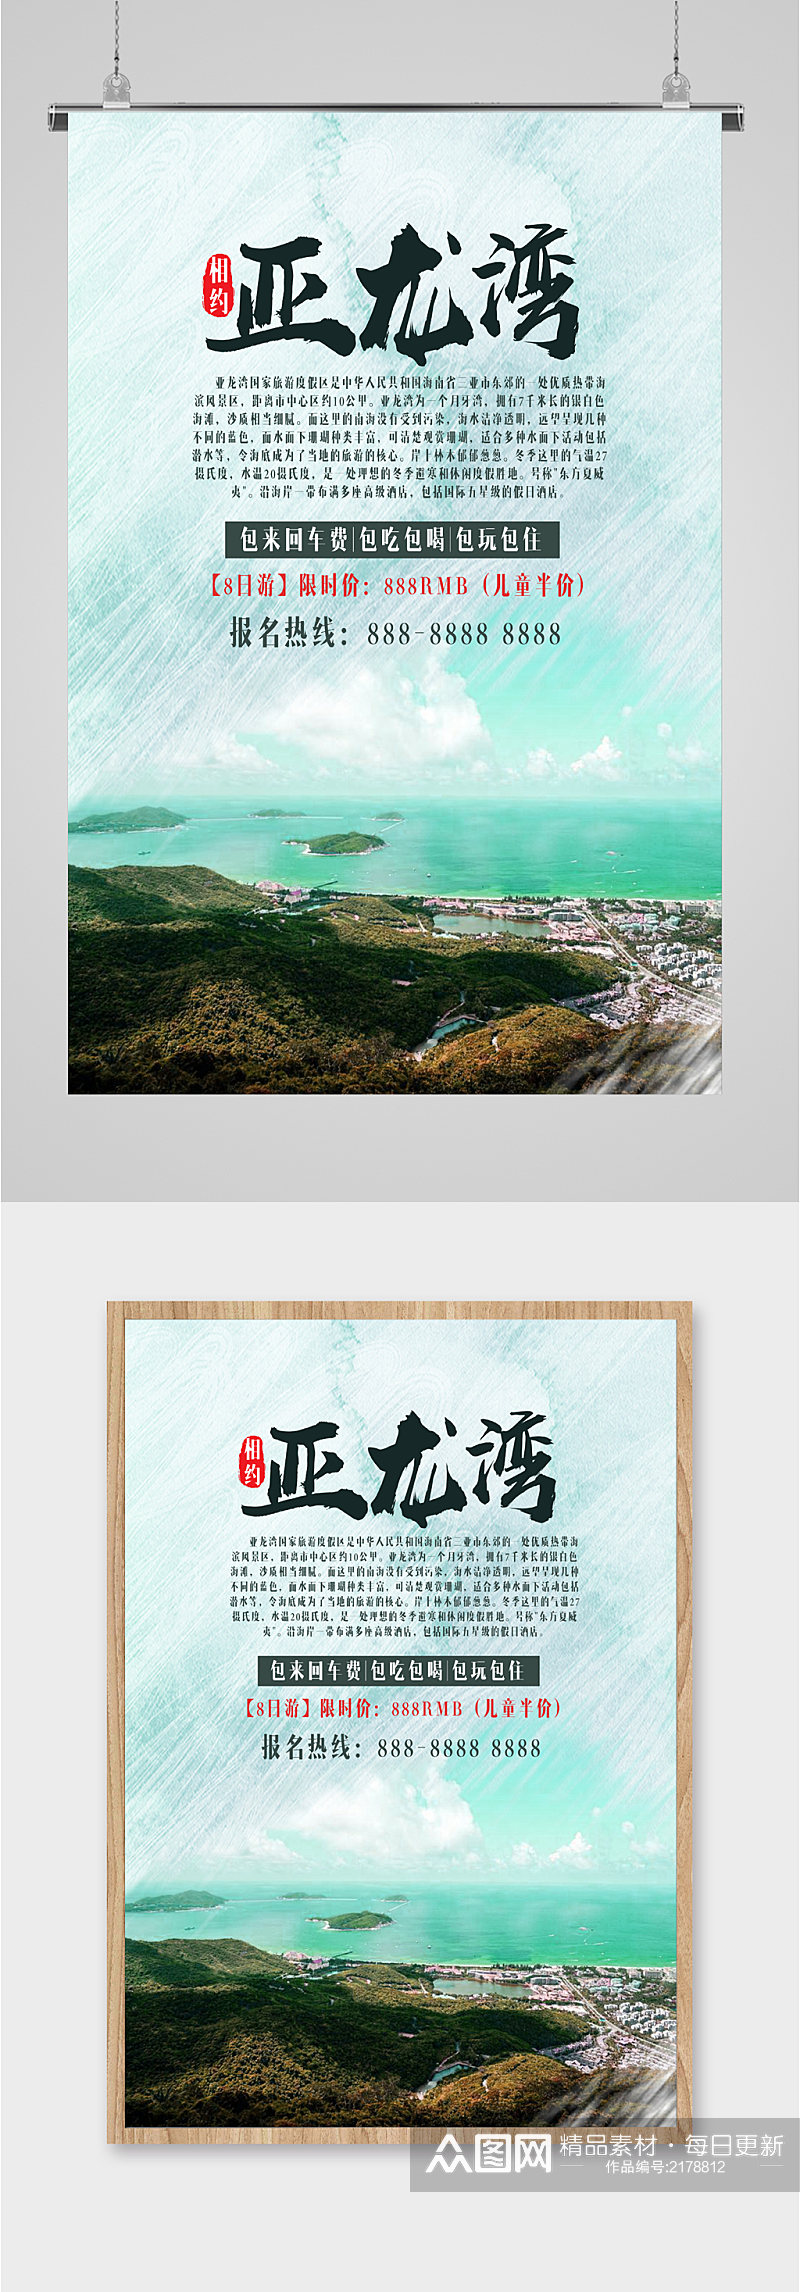 亚龙湾风景旅游海报素材